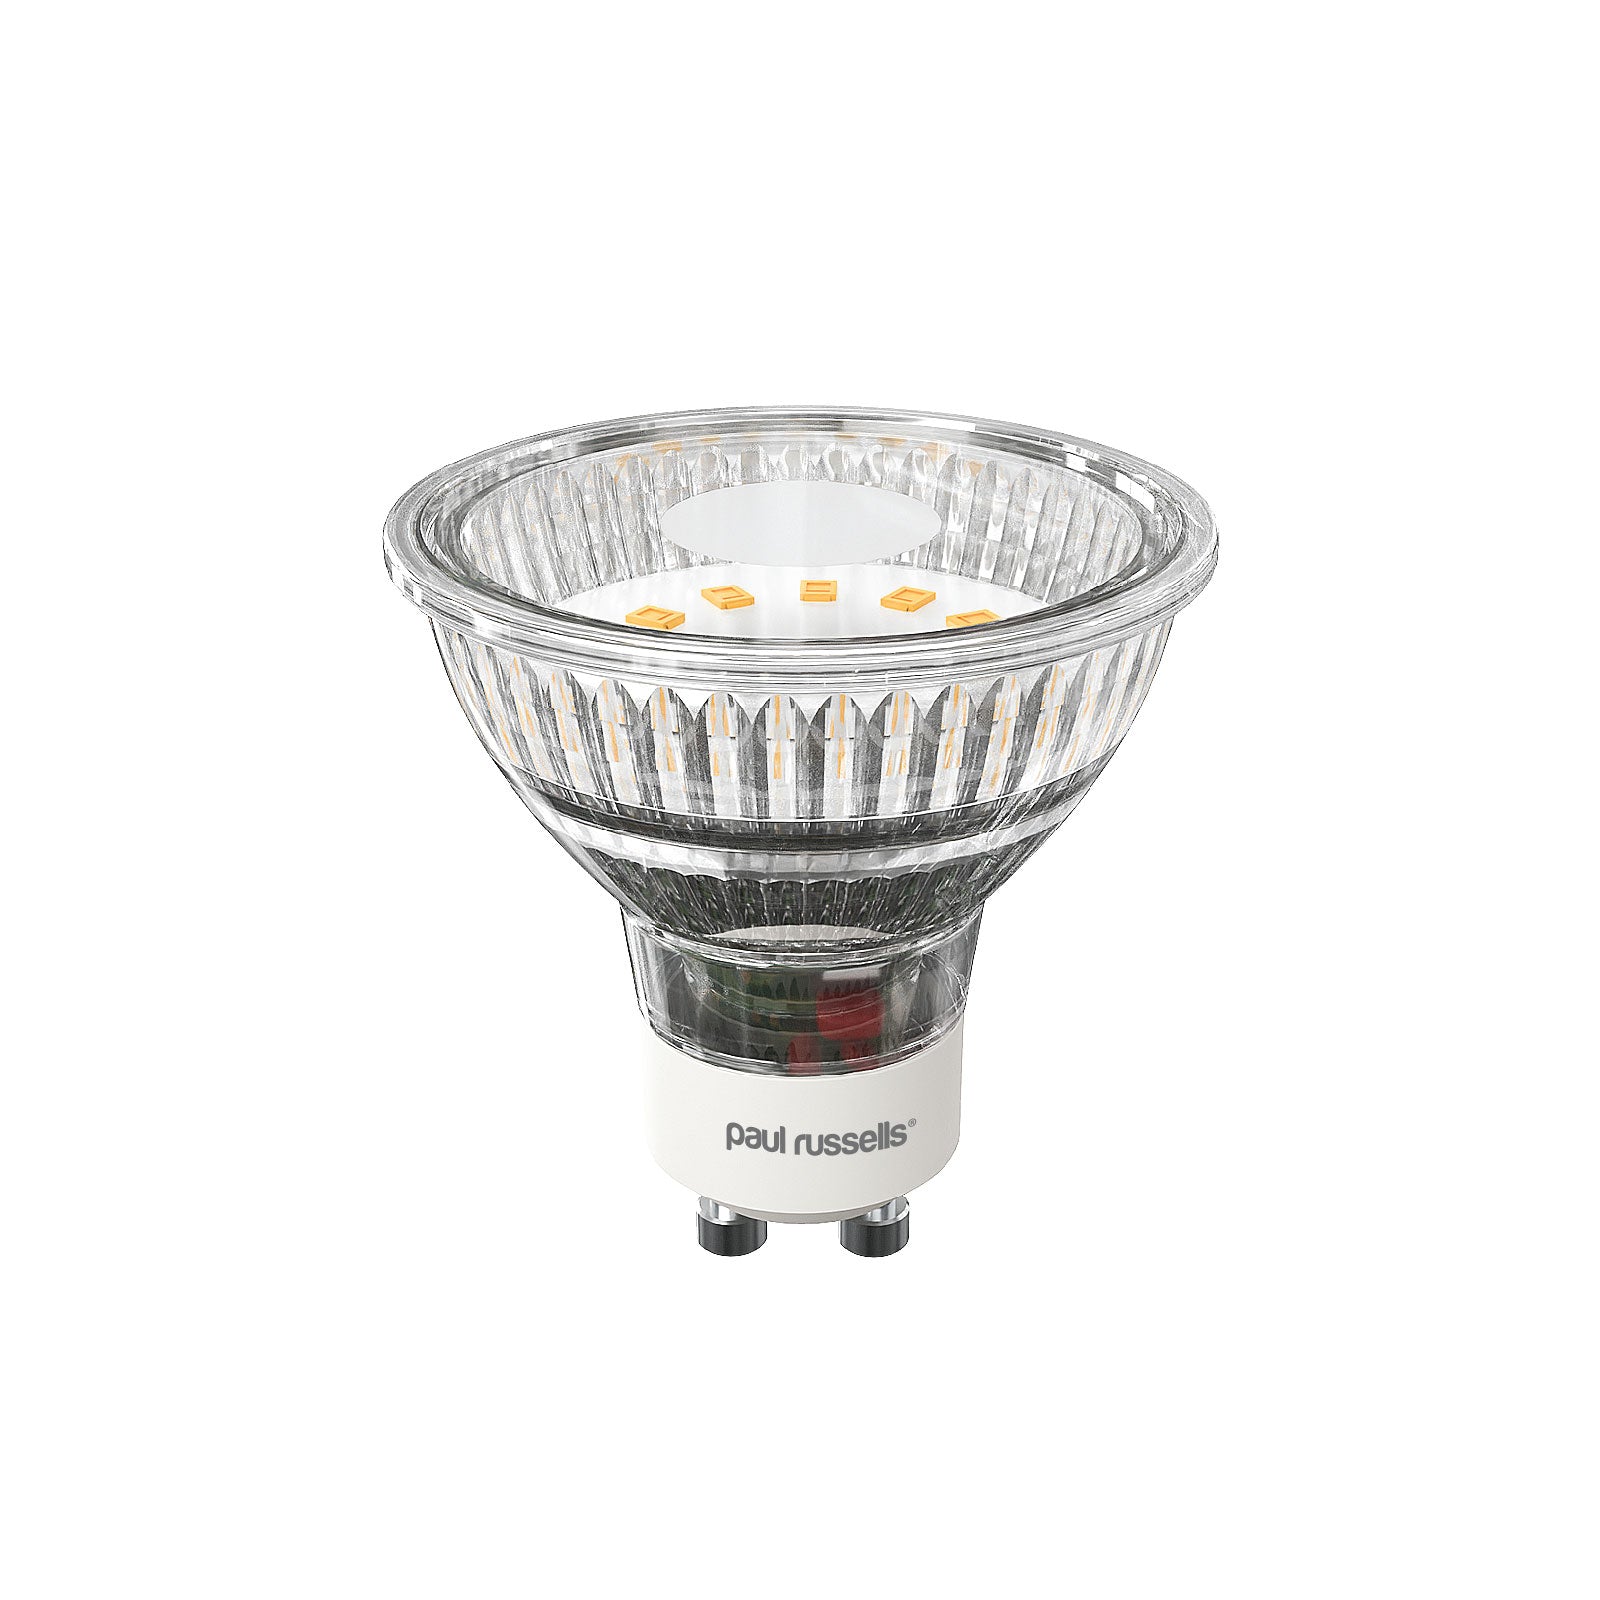 LED Spotlight 3W (30w), GU10, 345 Lumens, Warm White (2700K), 240V